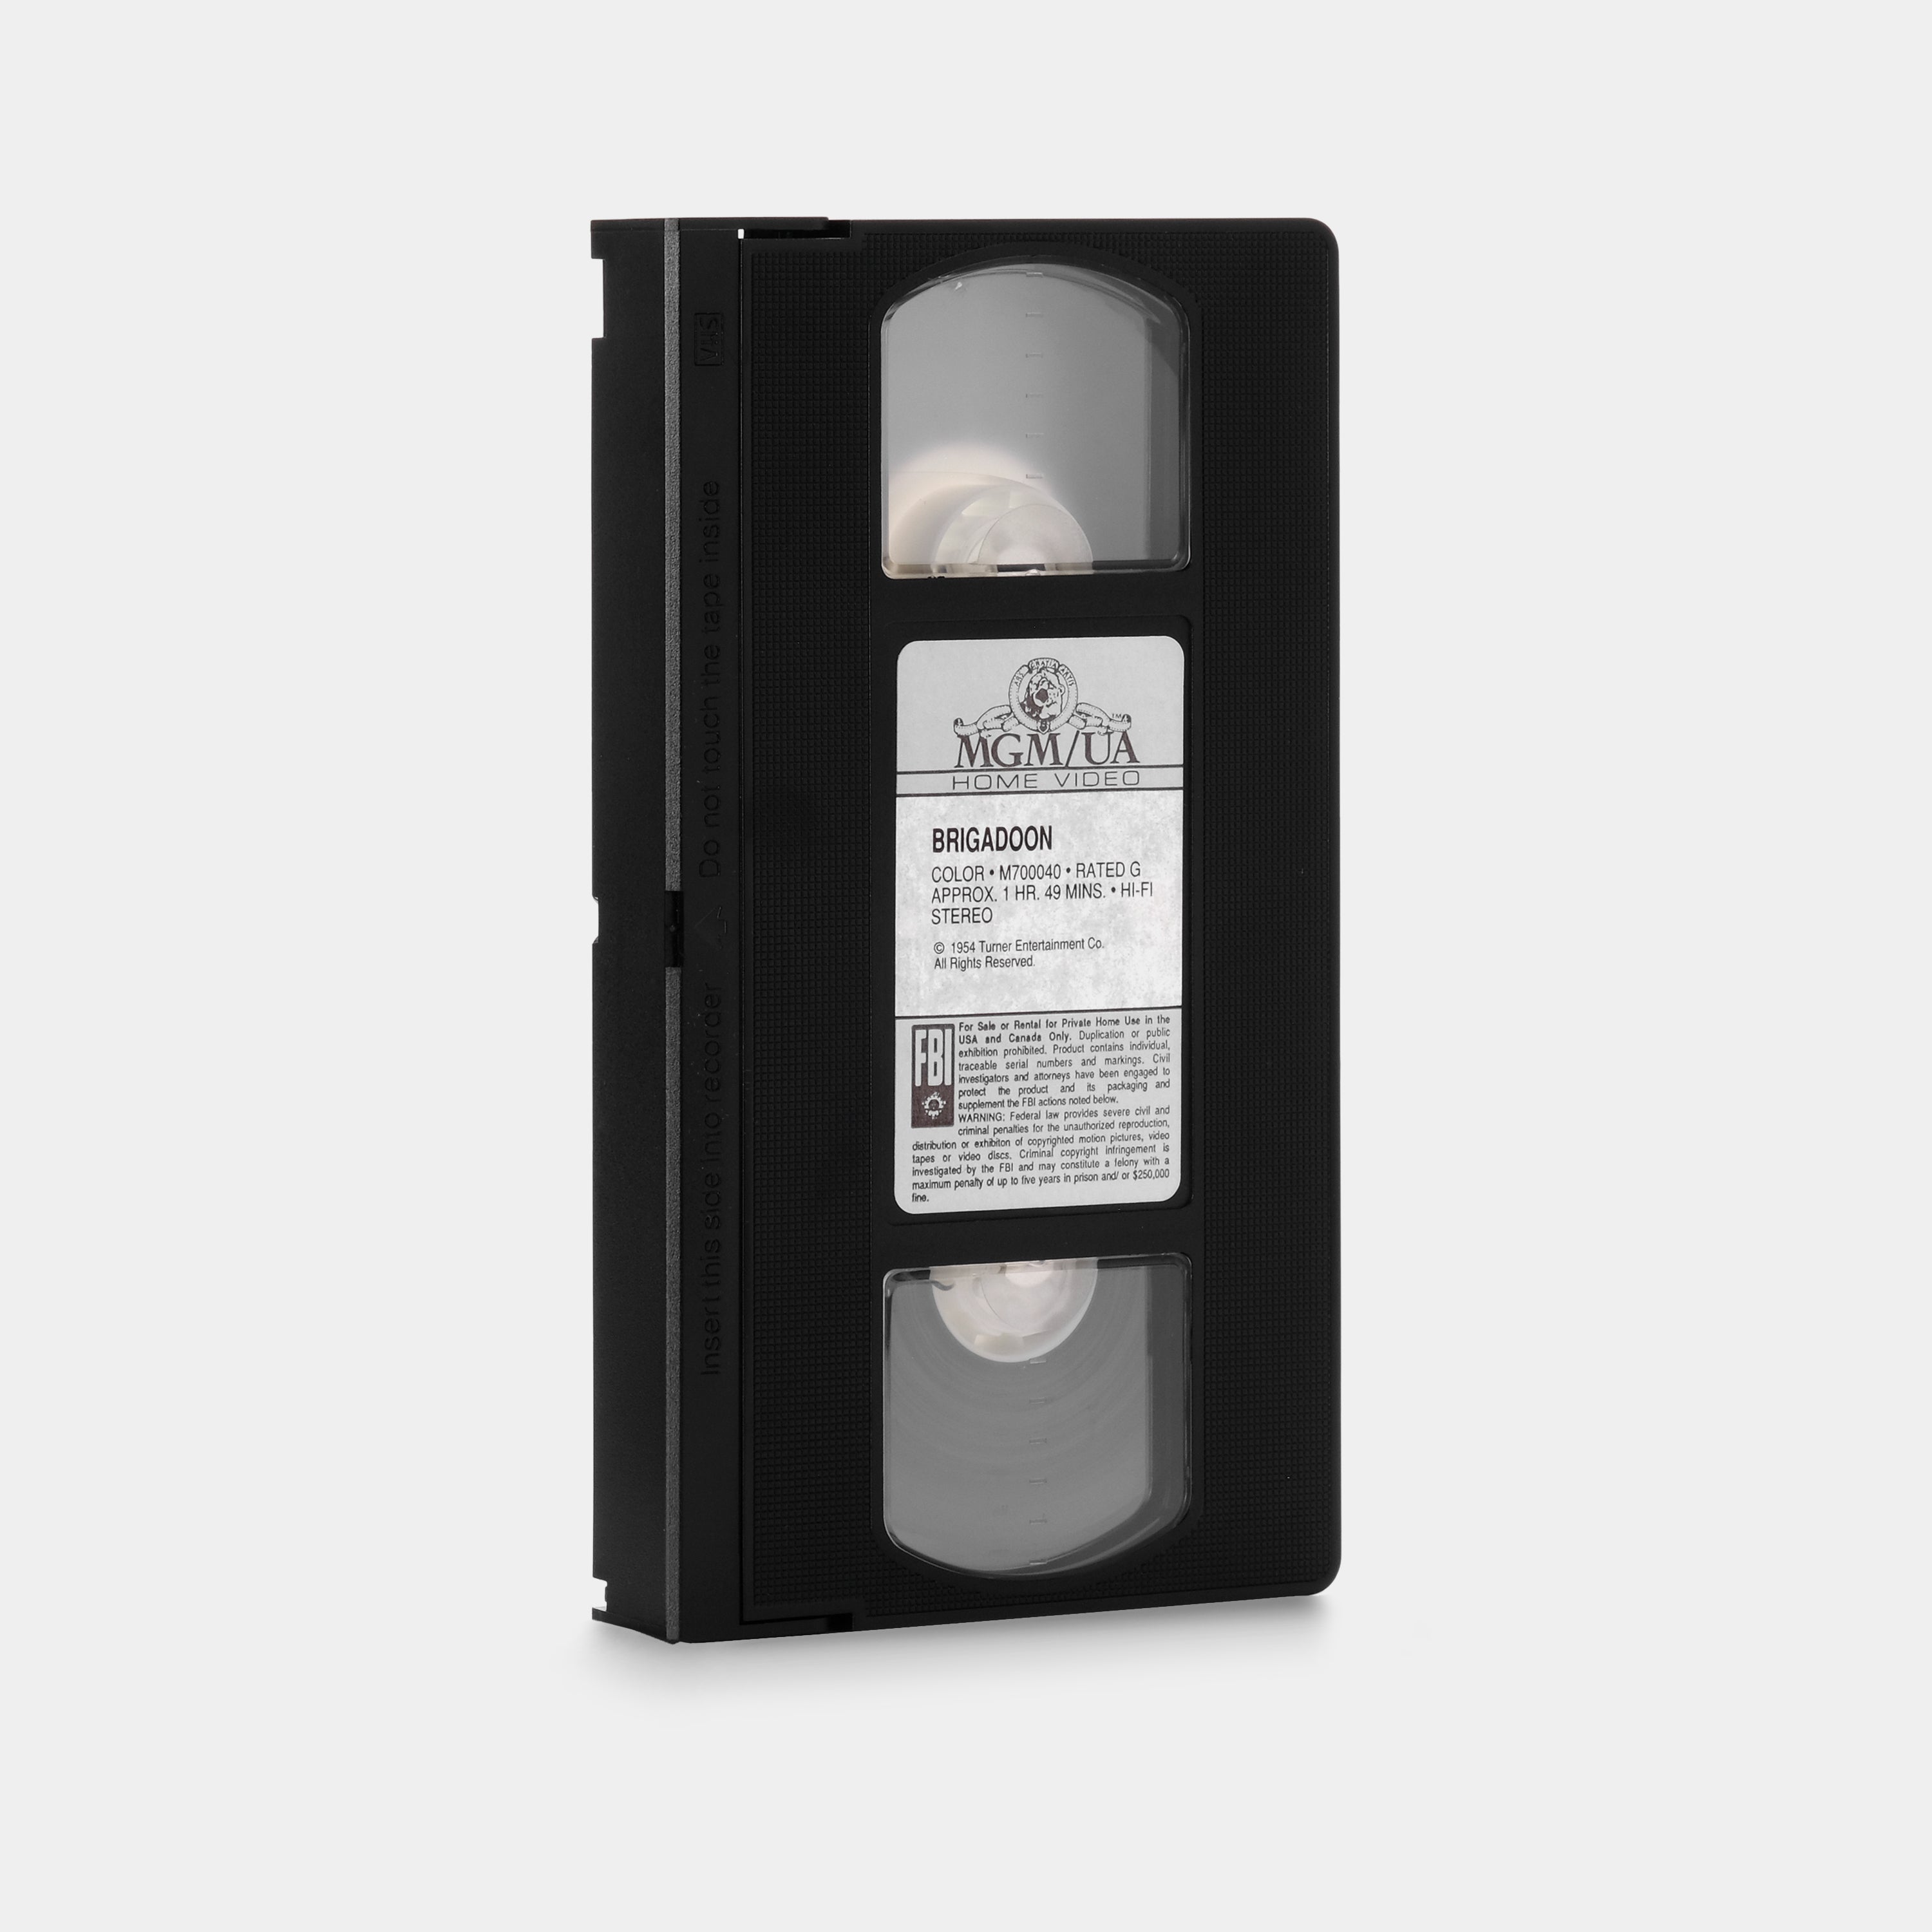 Brigadoon VHS Tape